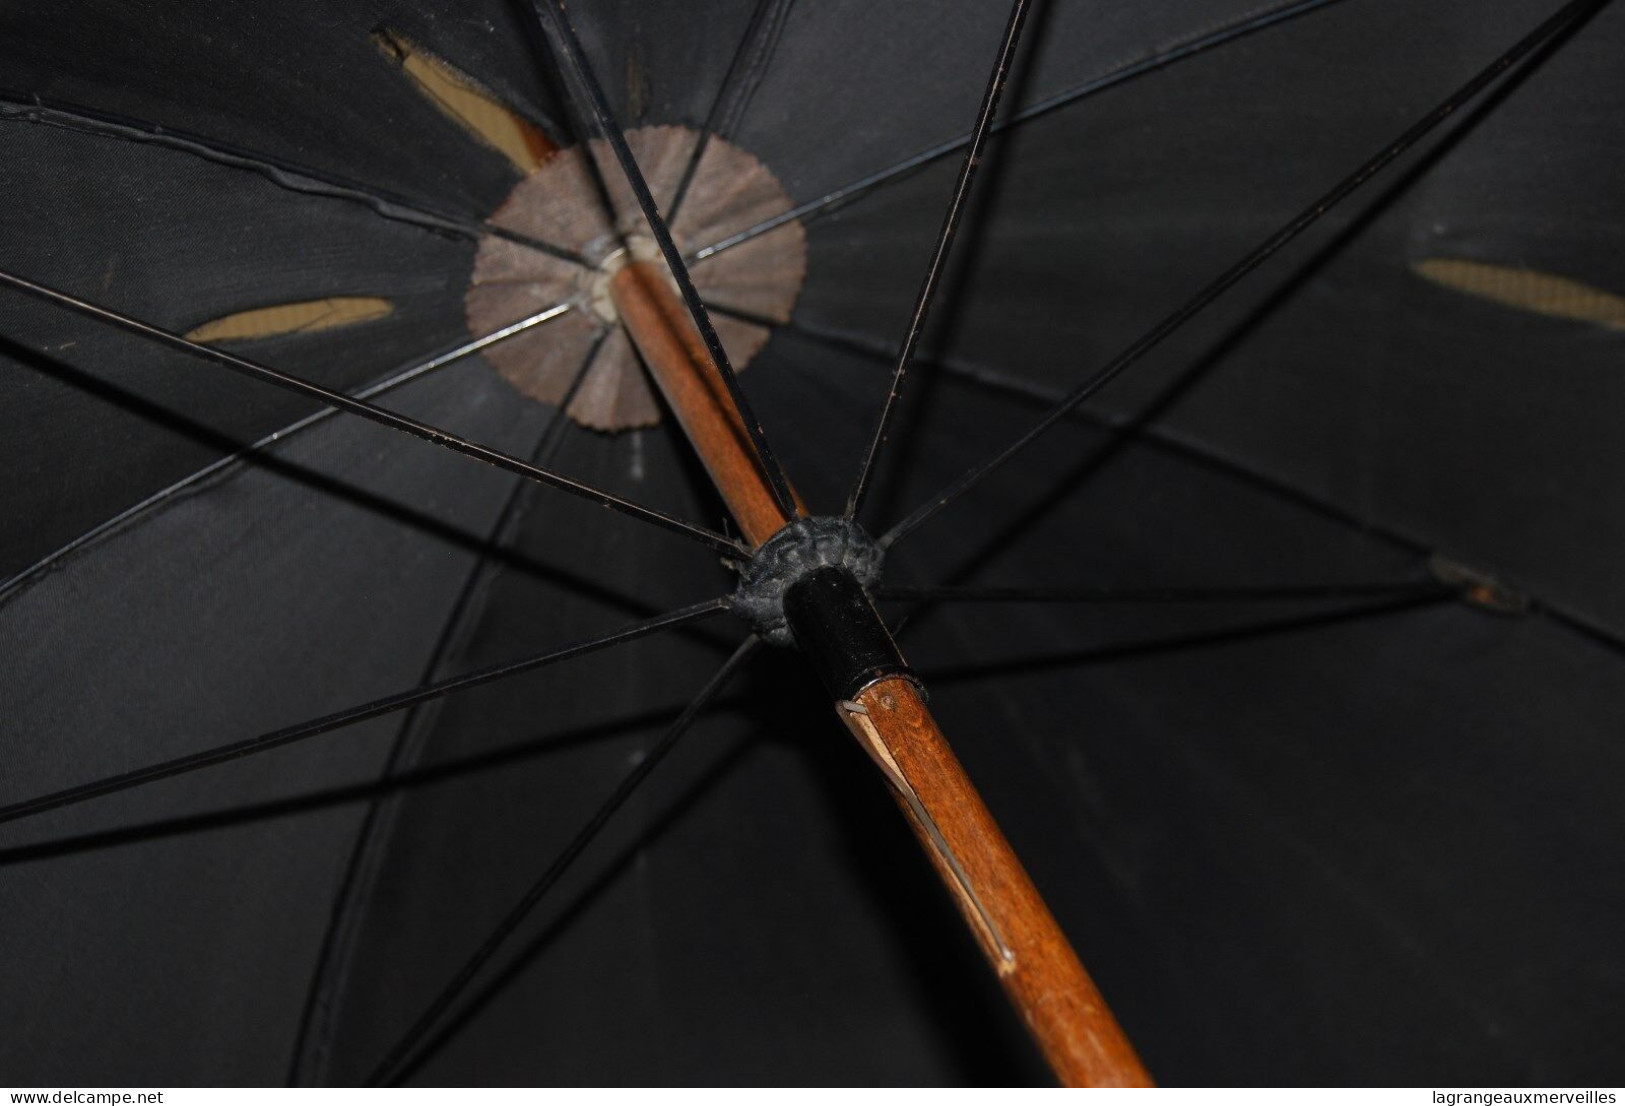 E1 Ancienne Ombrelle - Parapluie - Rare - 50' - Vintage - Ombrelles, Parapluies